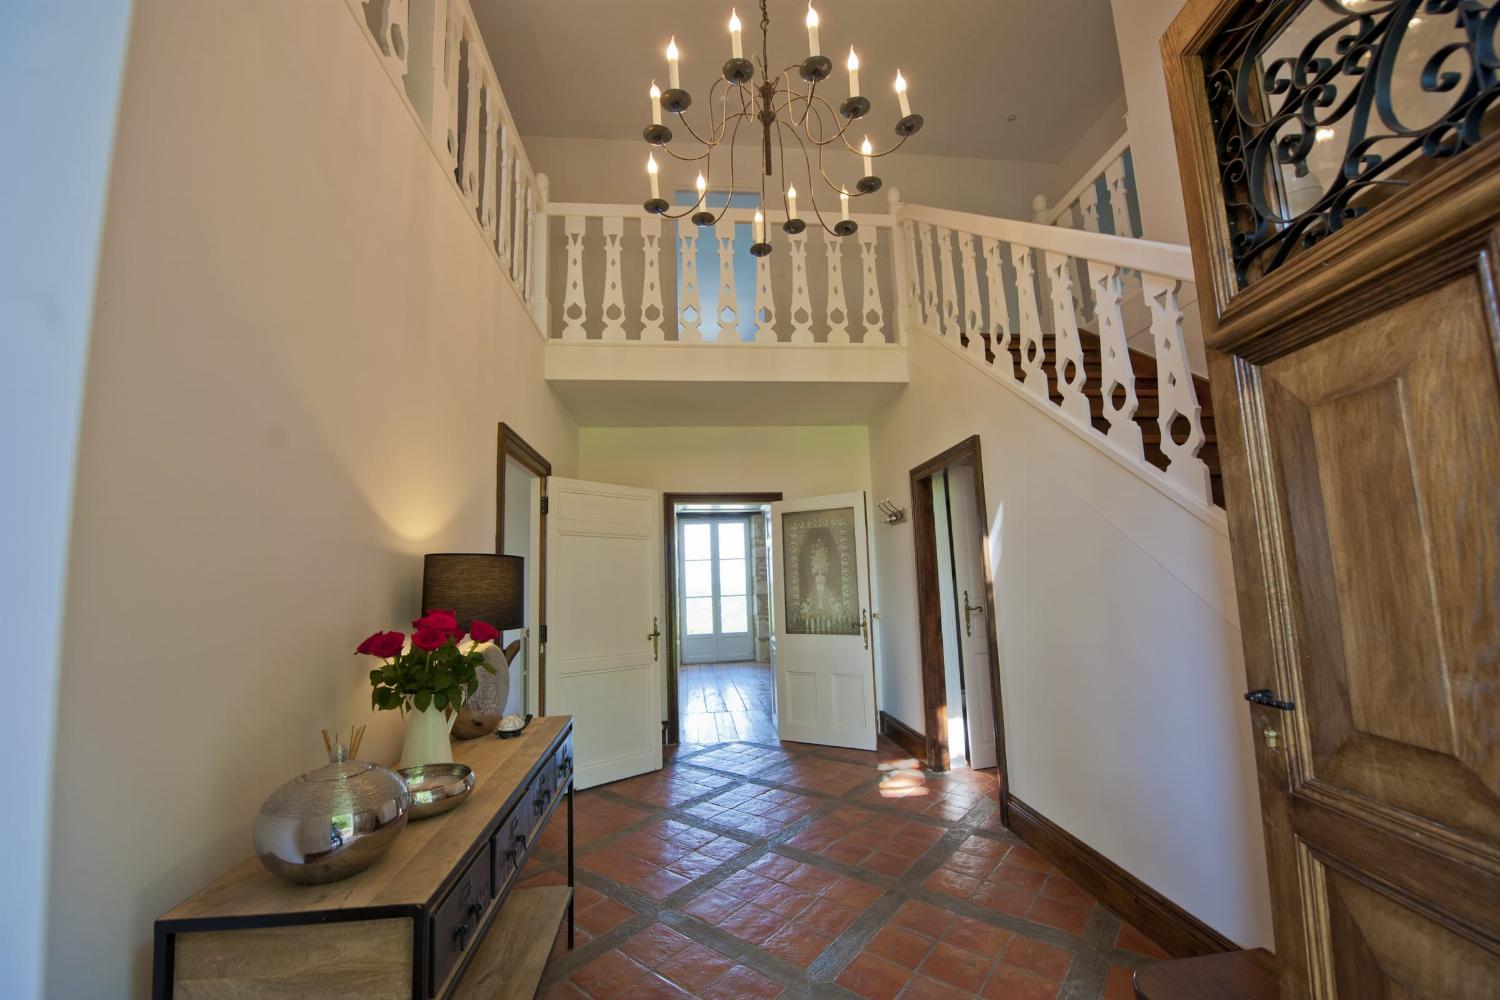 Hallway | Rental home in Dordogne